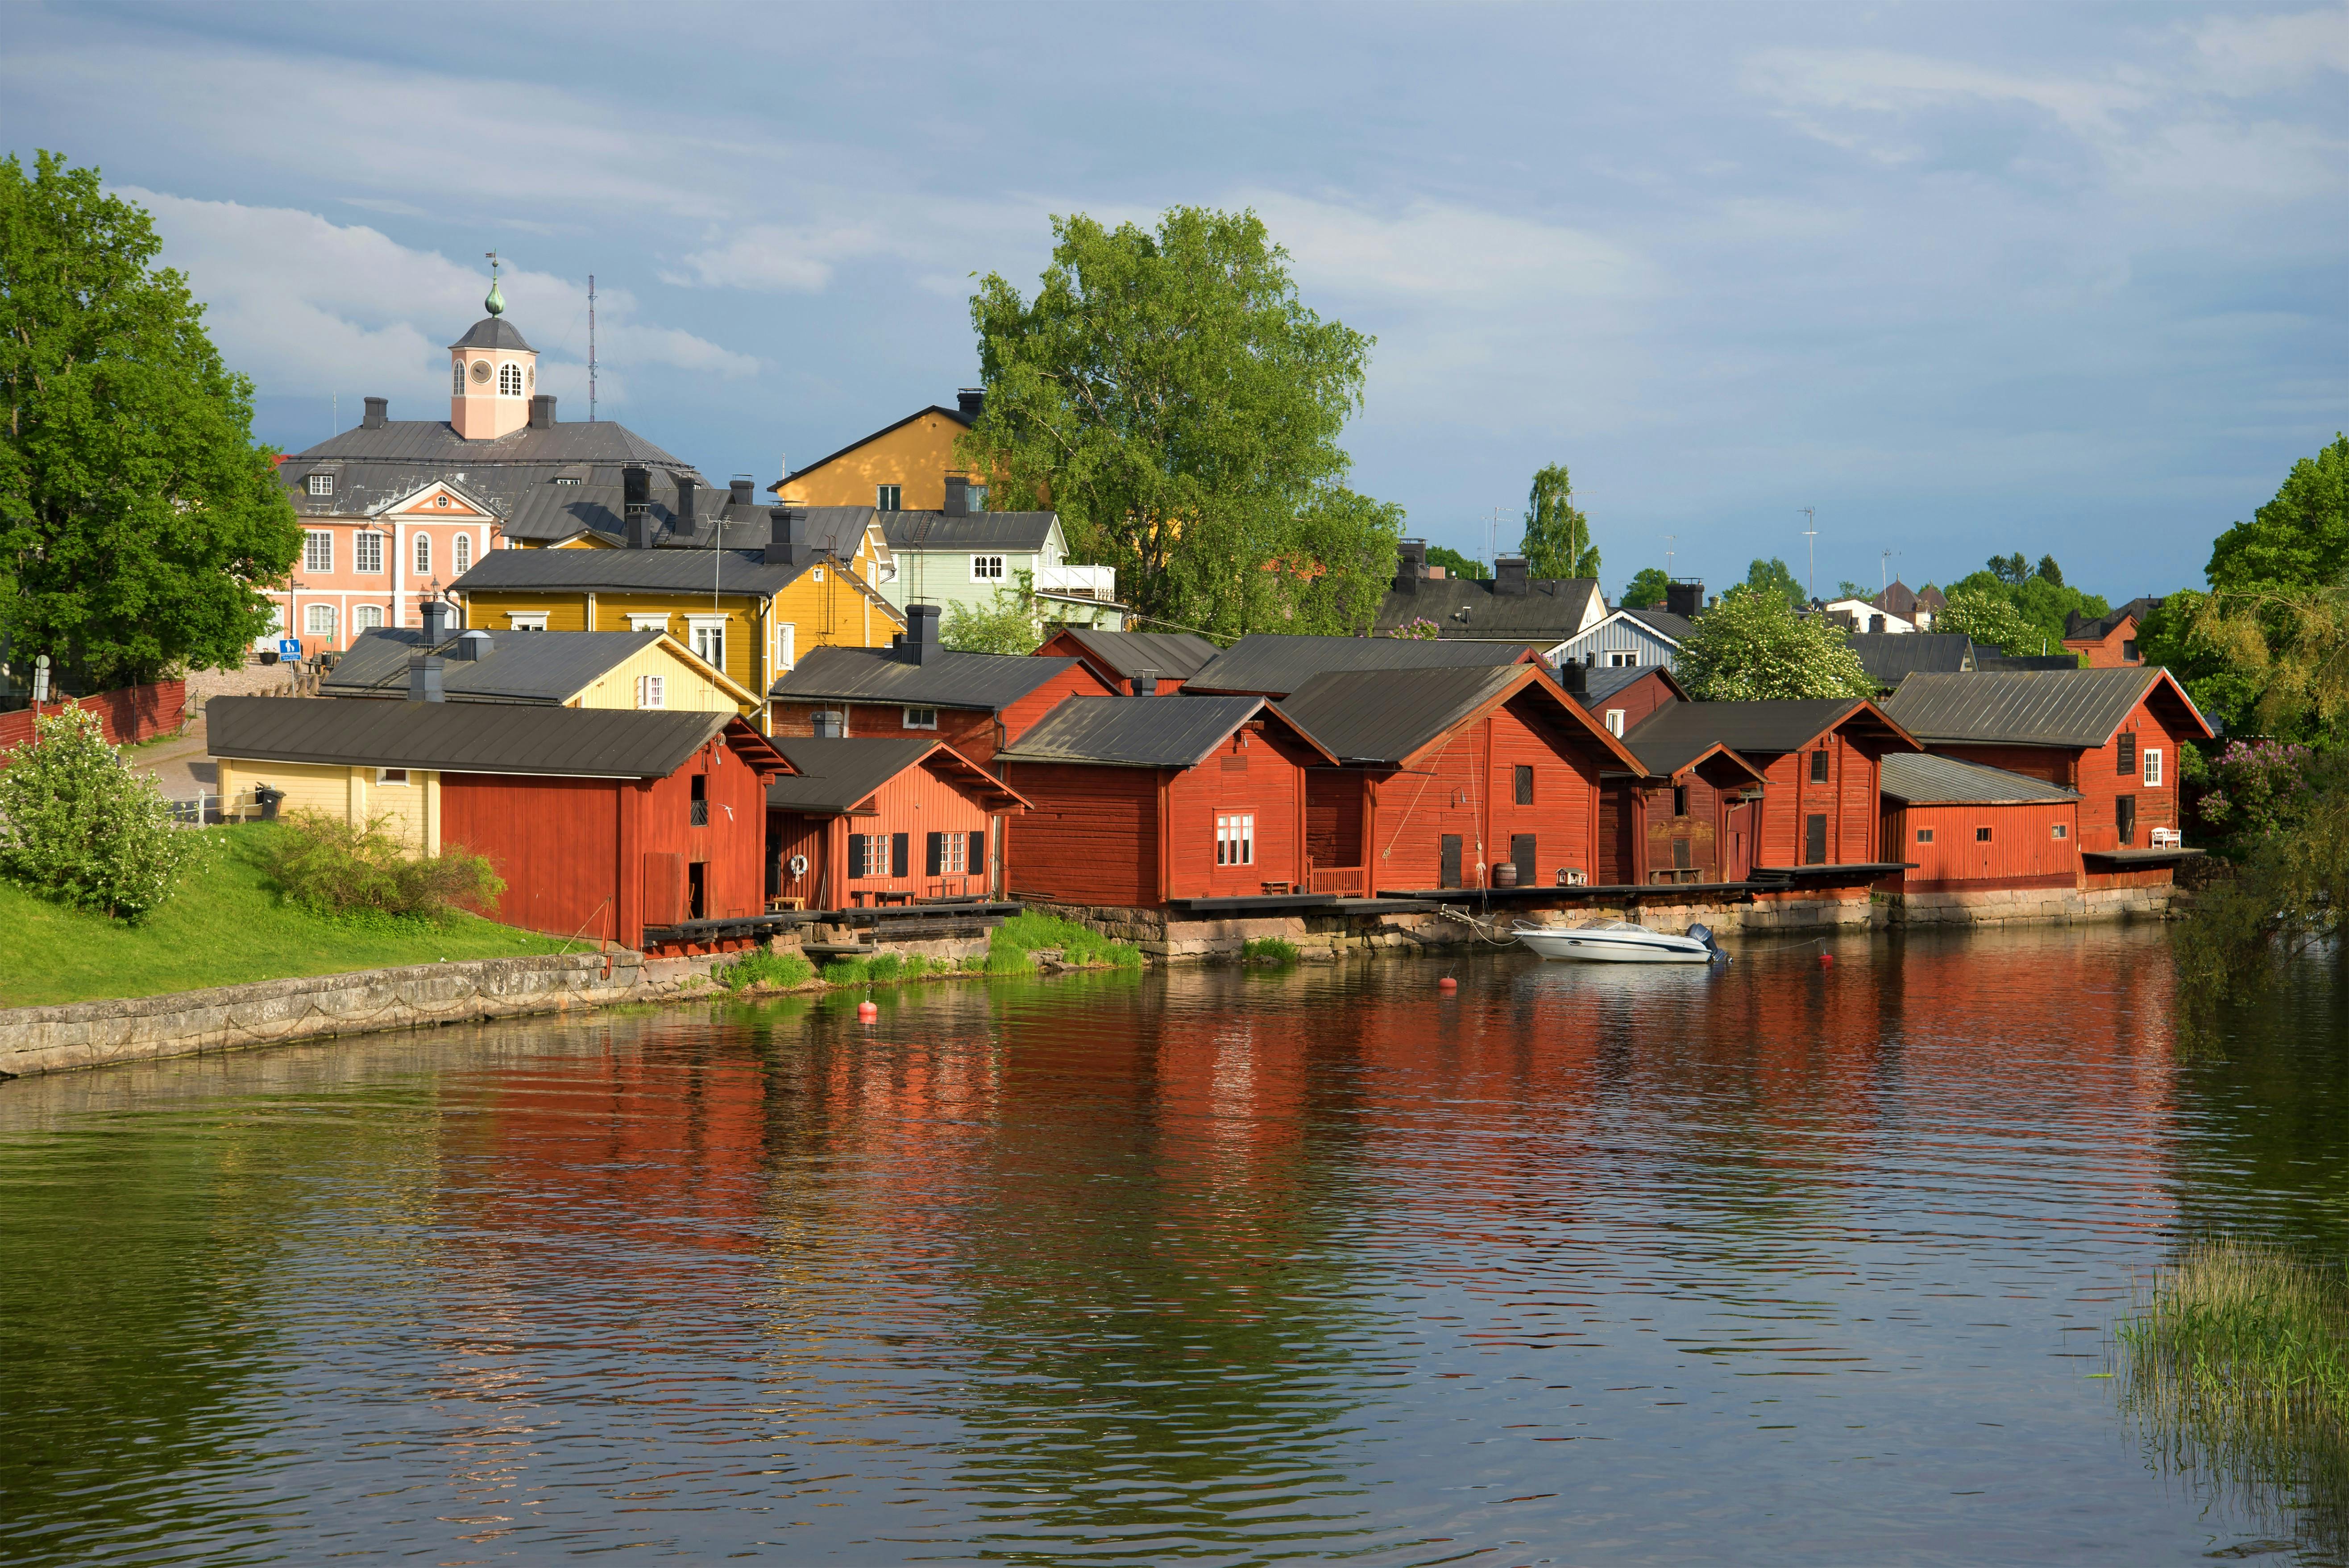 Lo más destacado de Helsinki y recorrido turístico por Porvoo